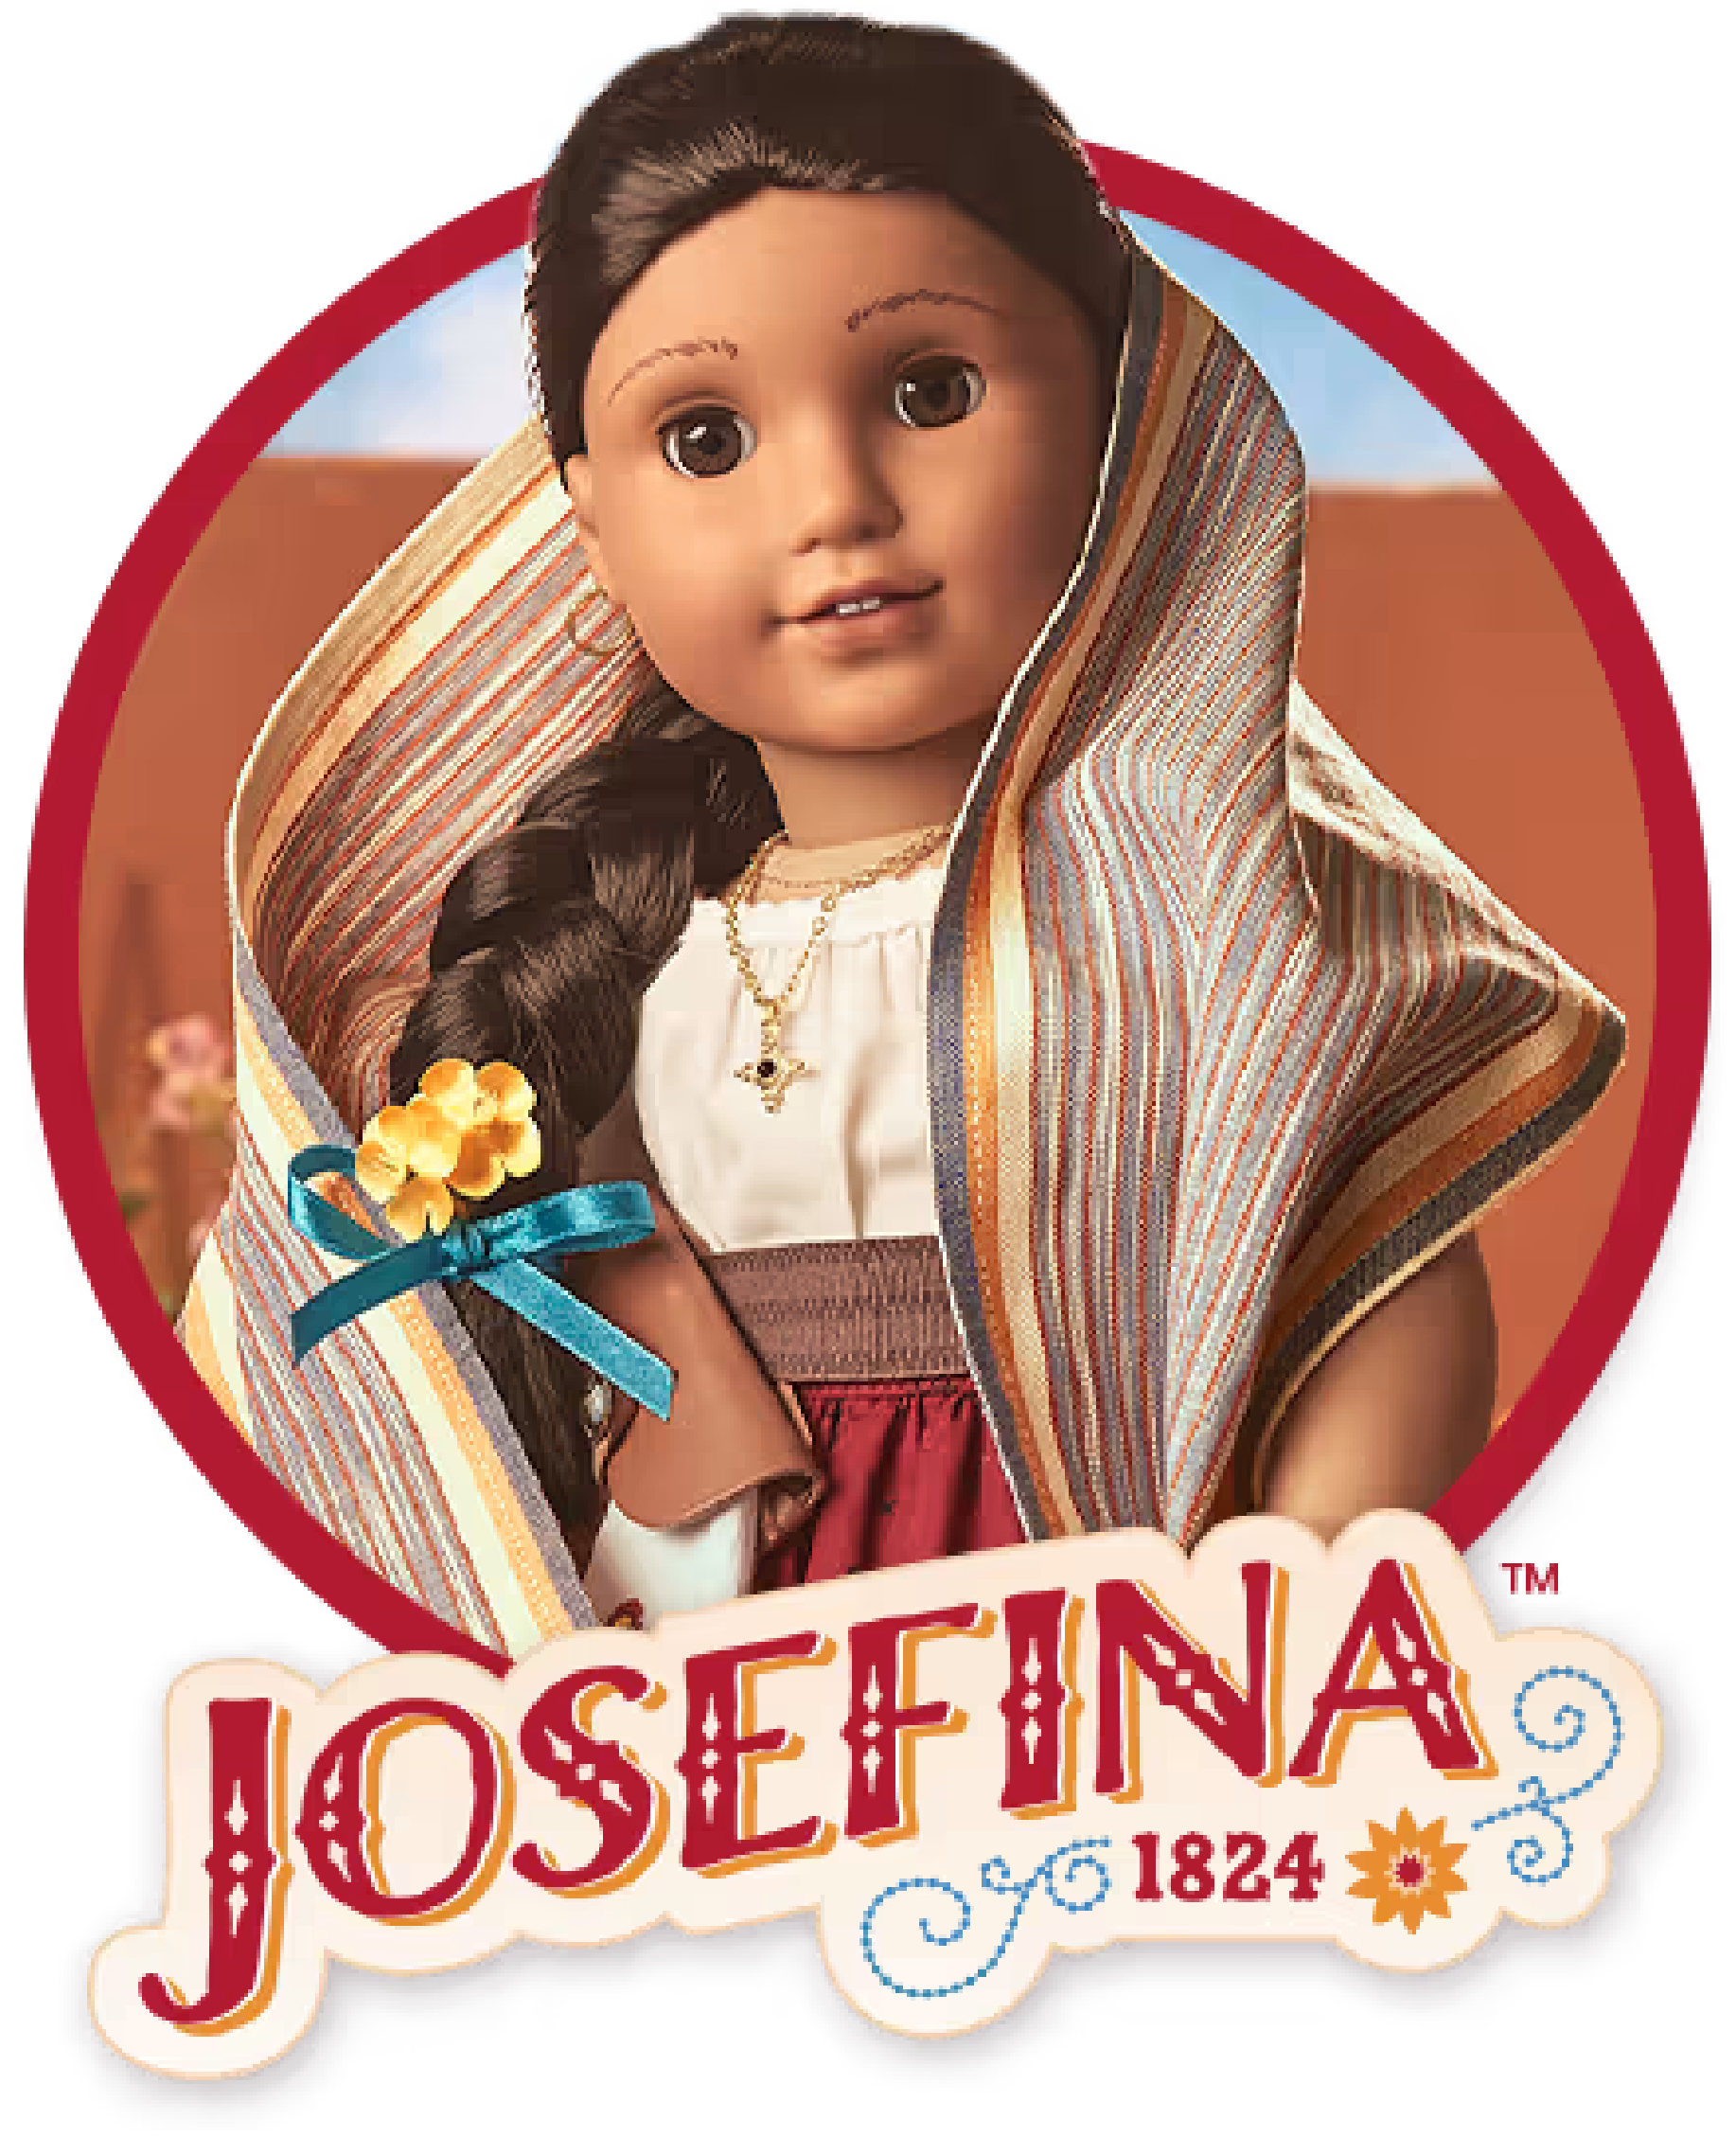 Josefina, 1824